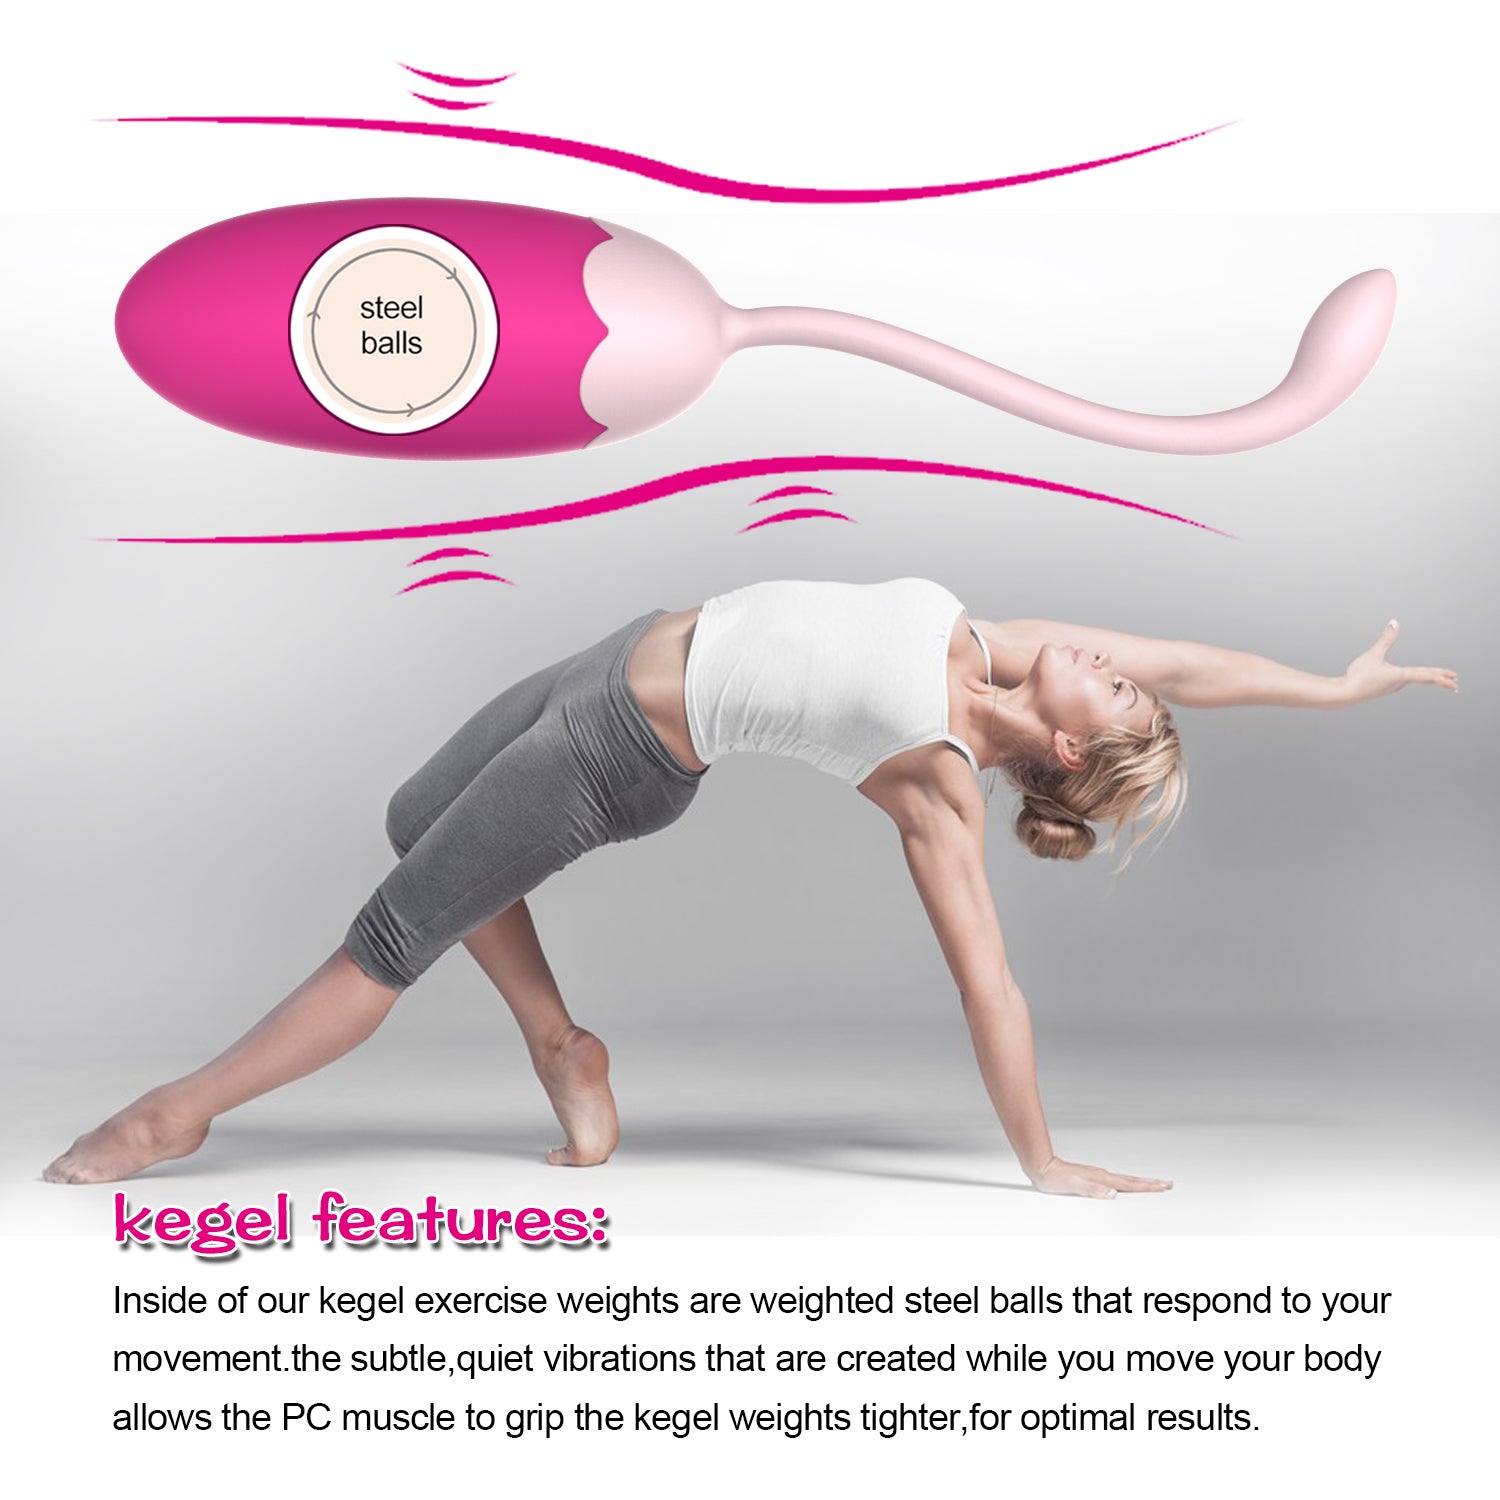 Silicone 5 Pcs Ben Wa Balls Vagina Tightening Kegel Exerciser Kit